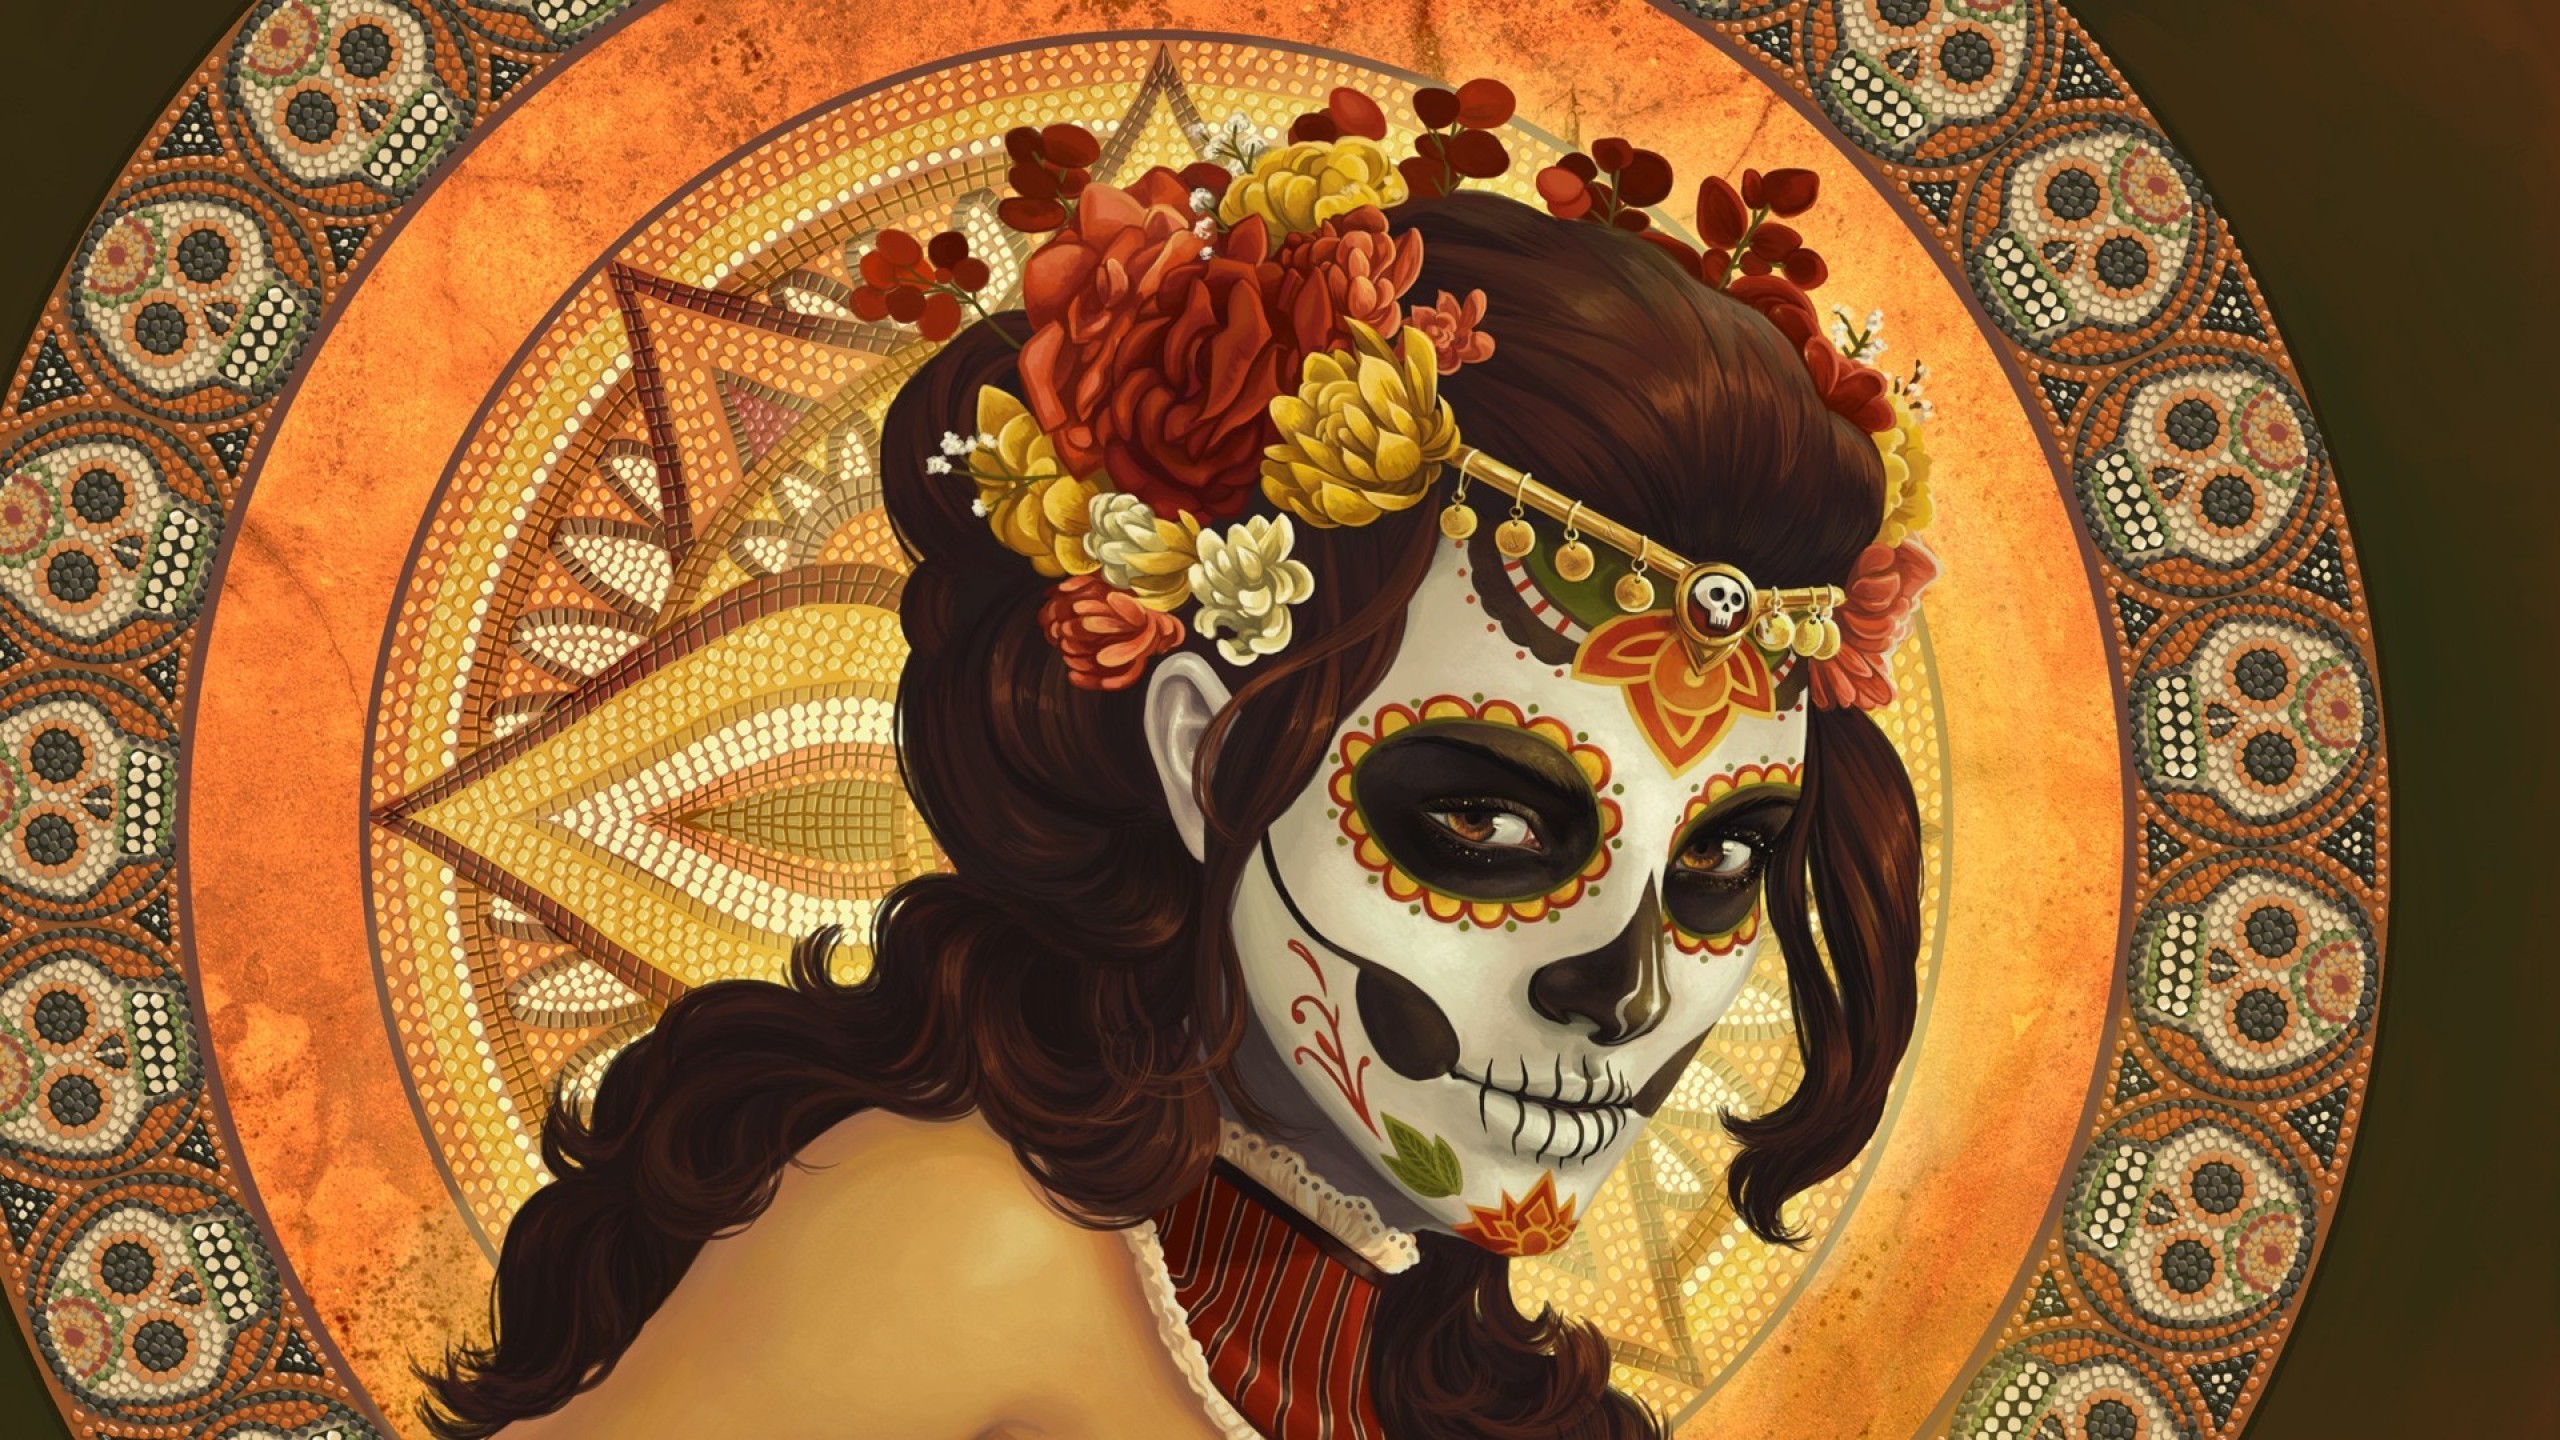 Sugar Skull, Dia De Los Muertos, Digital Art, Artwork, Women, Pattern, Mosaic, Skull, Flowers, Mexico Wallpaper